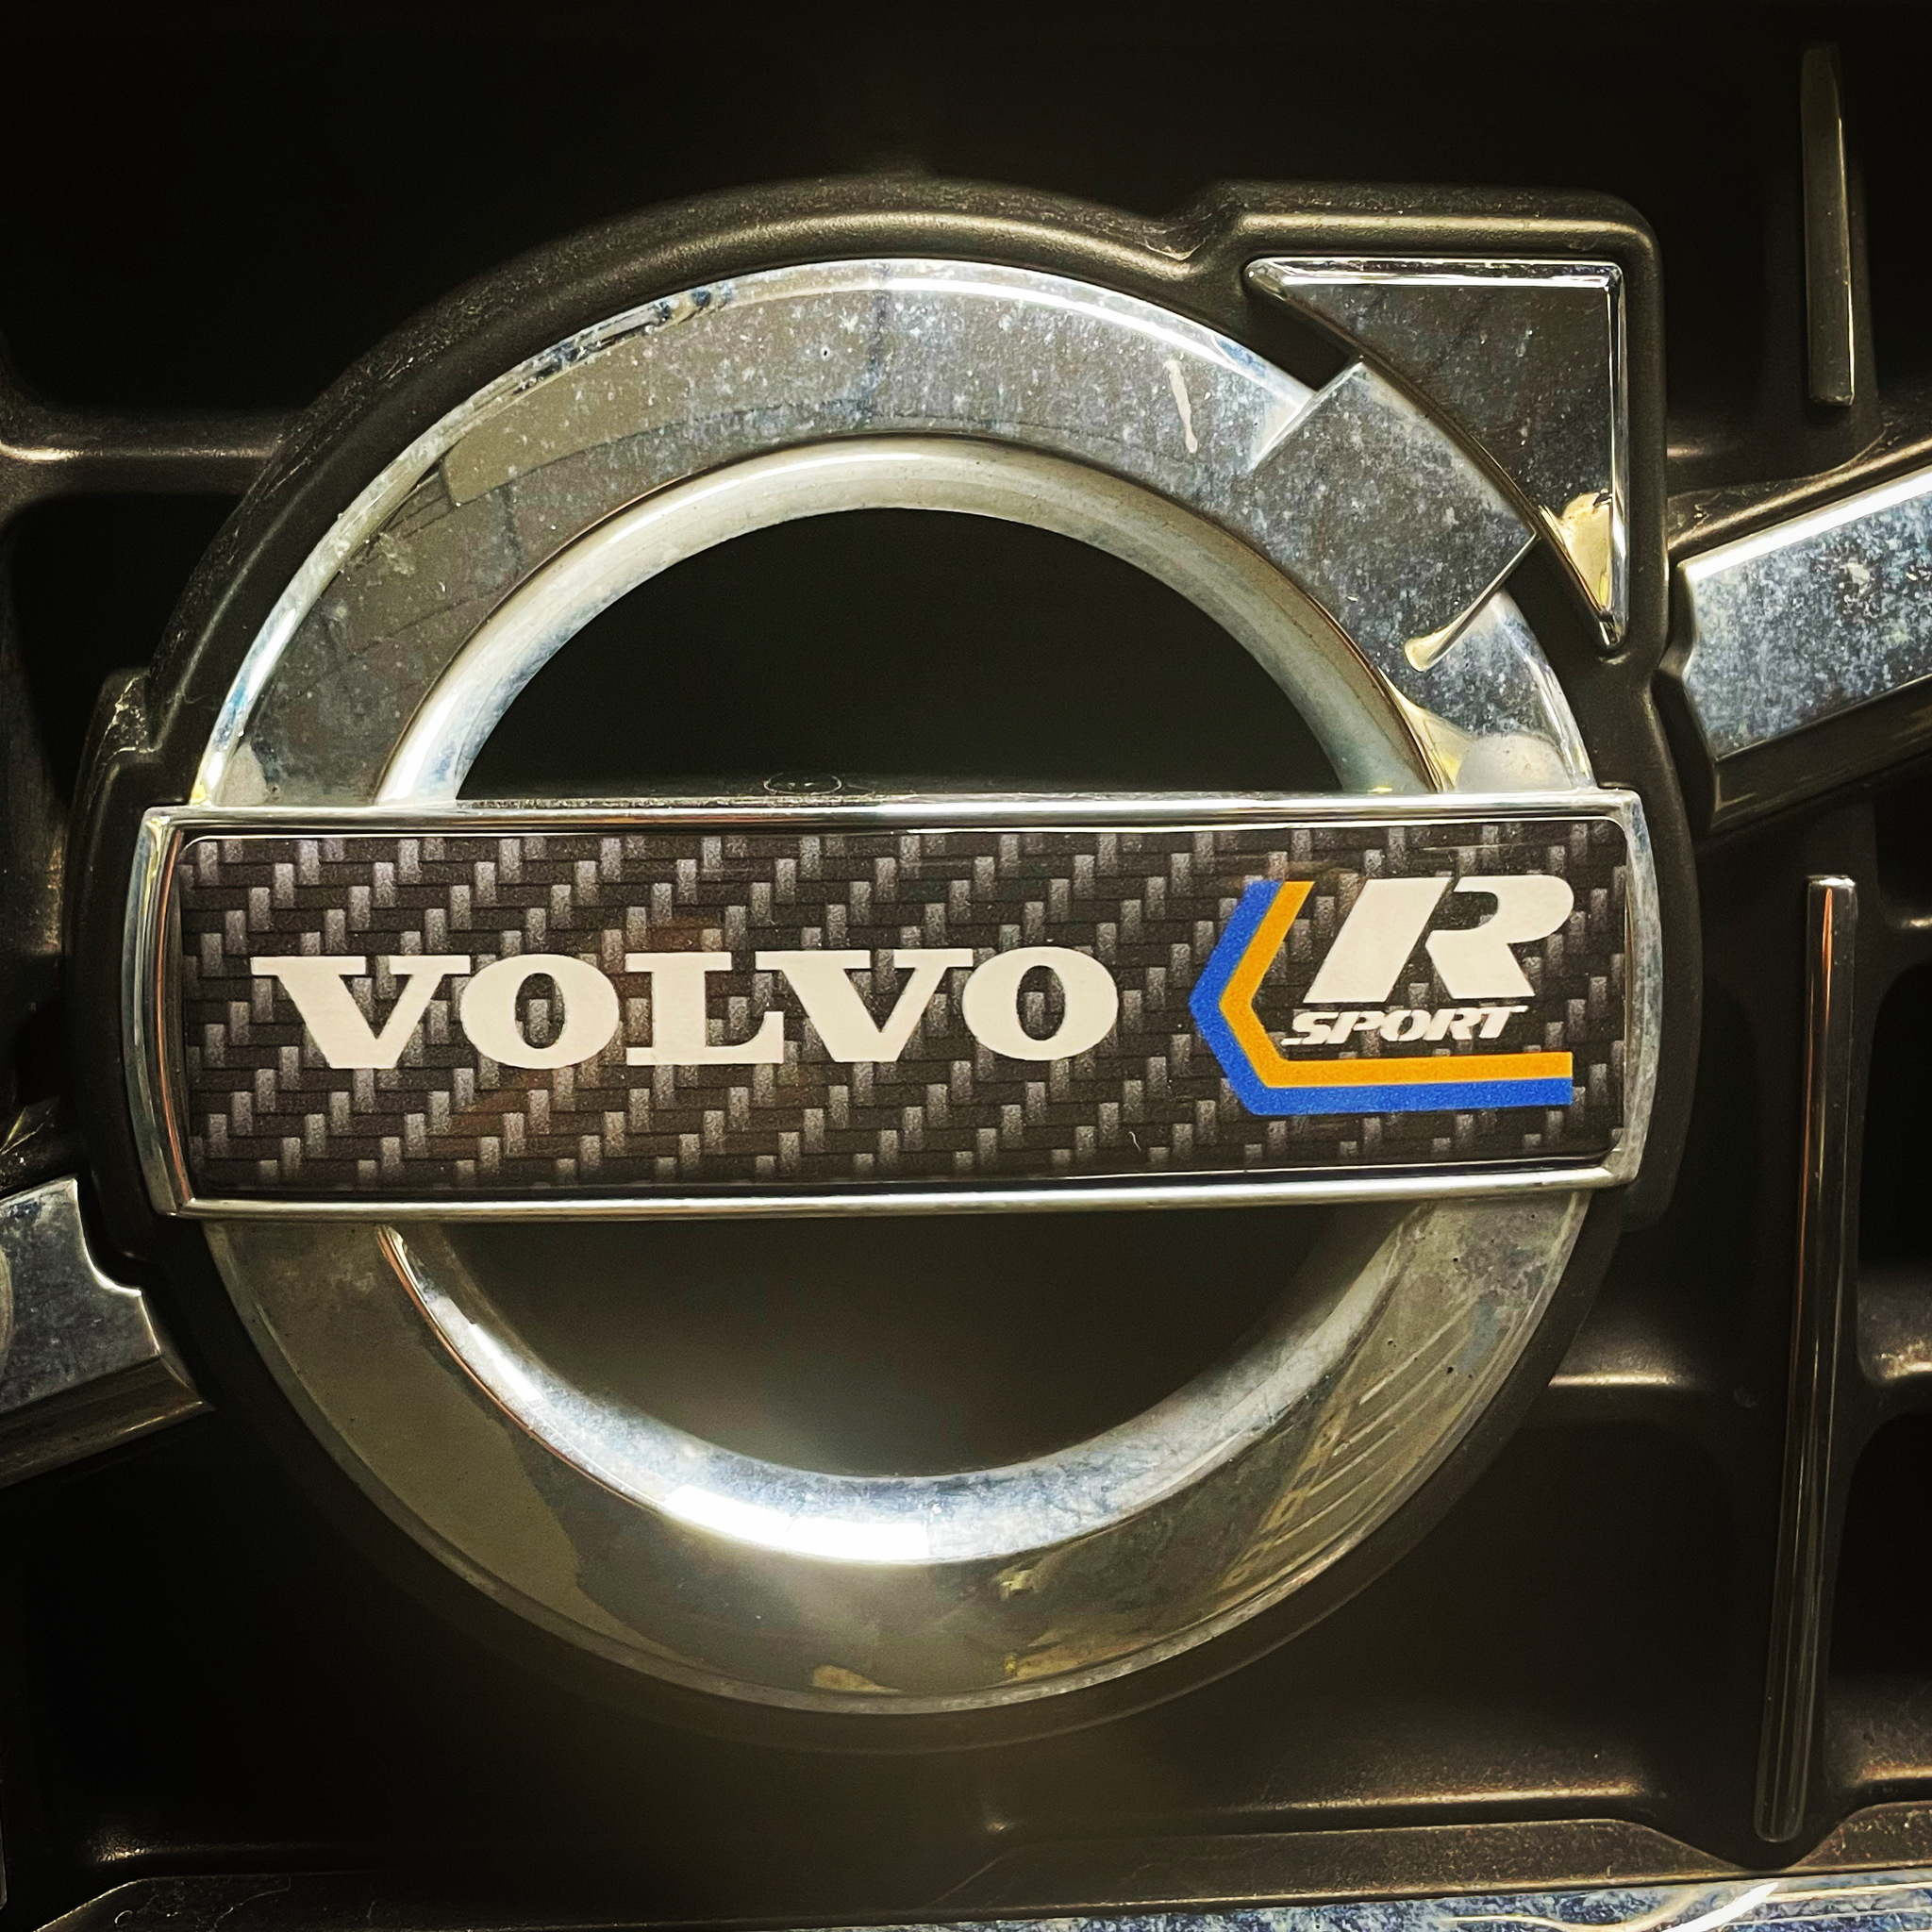 Modell-lista Volvo C30, 11-13, alla modeller Volvo C70, 10-13, alla modeller Volvo S40, 08-12, alla modeller Volvo S60, 11-13, alla modeller Volvo S80, 07-14, alla modeller med runt emblem Volvo V40, 